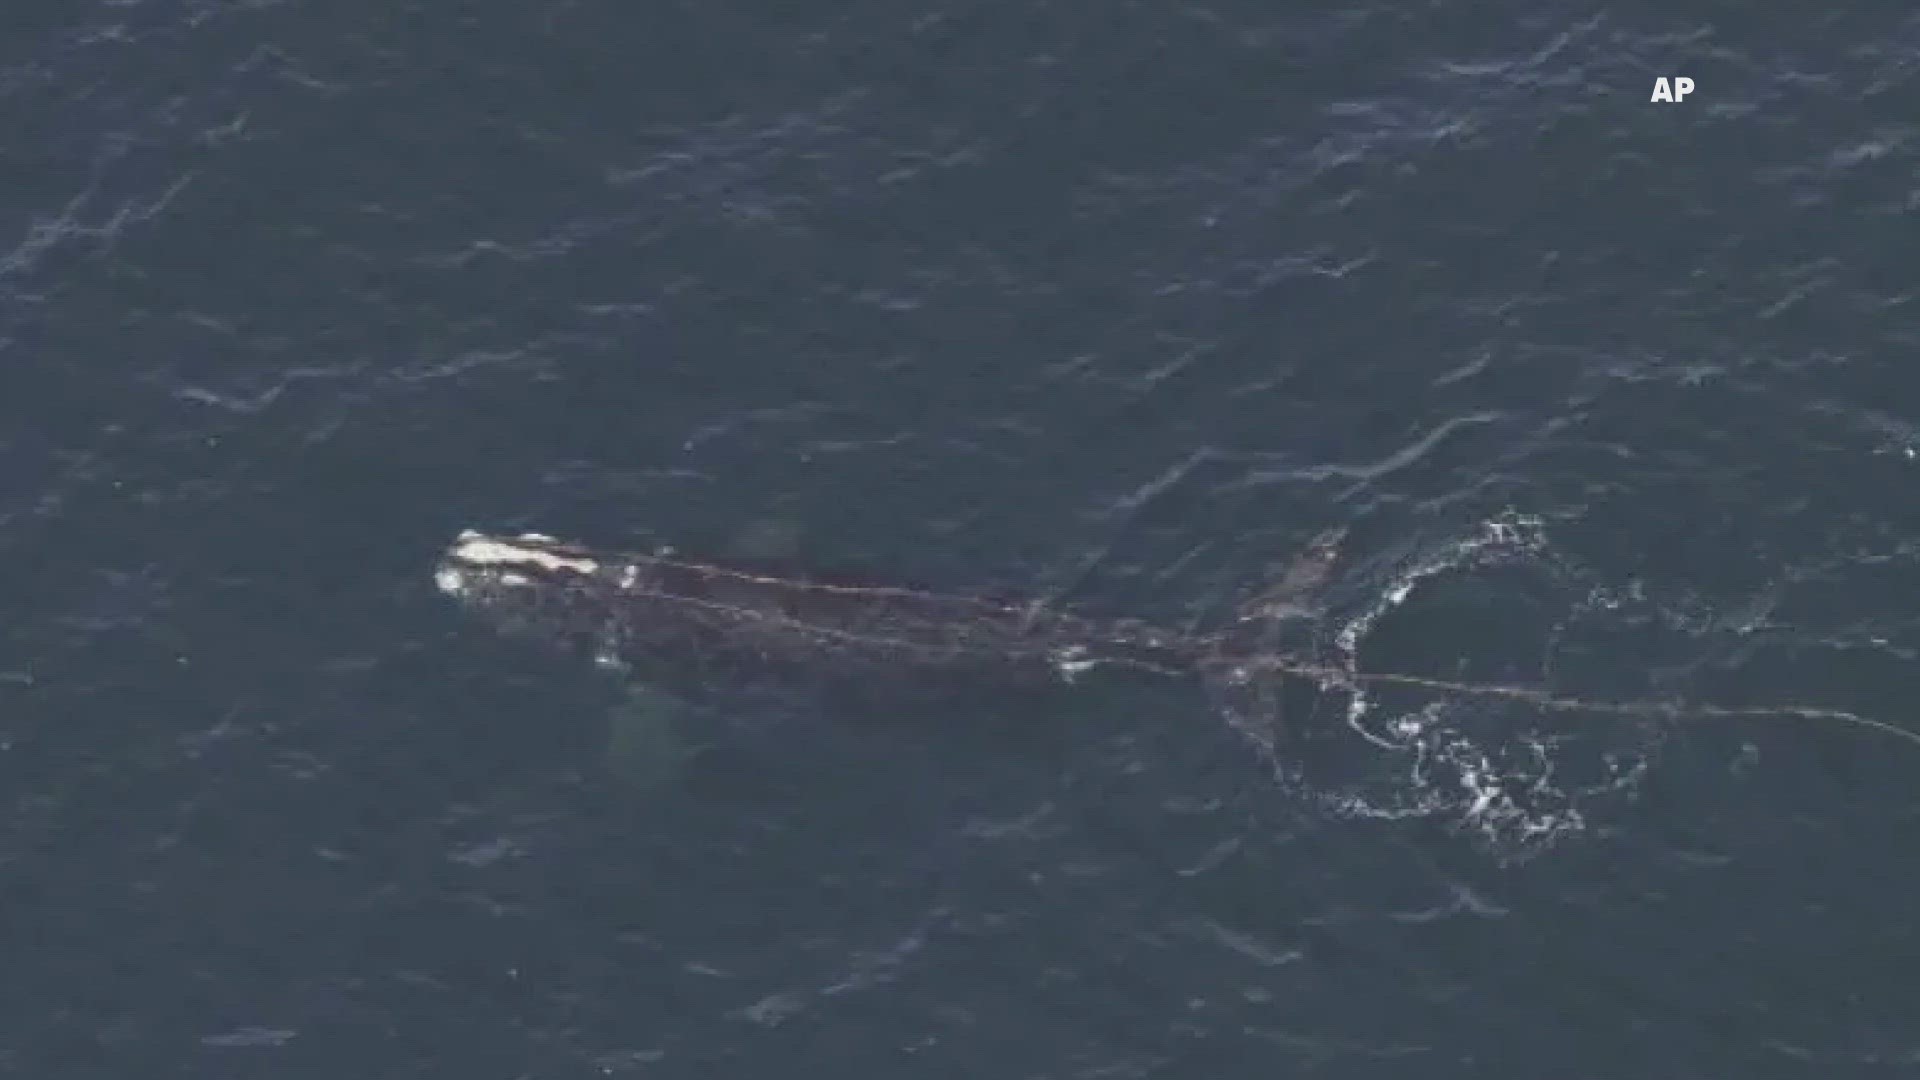 Right whale found entangled off New England coast | wgrz.com